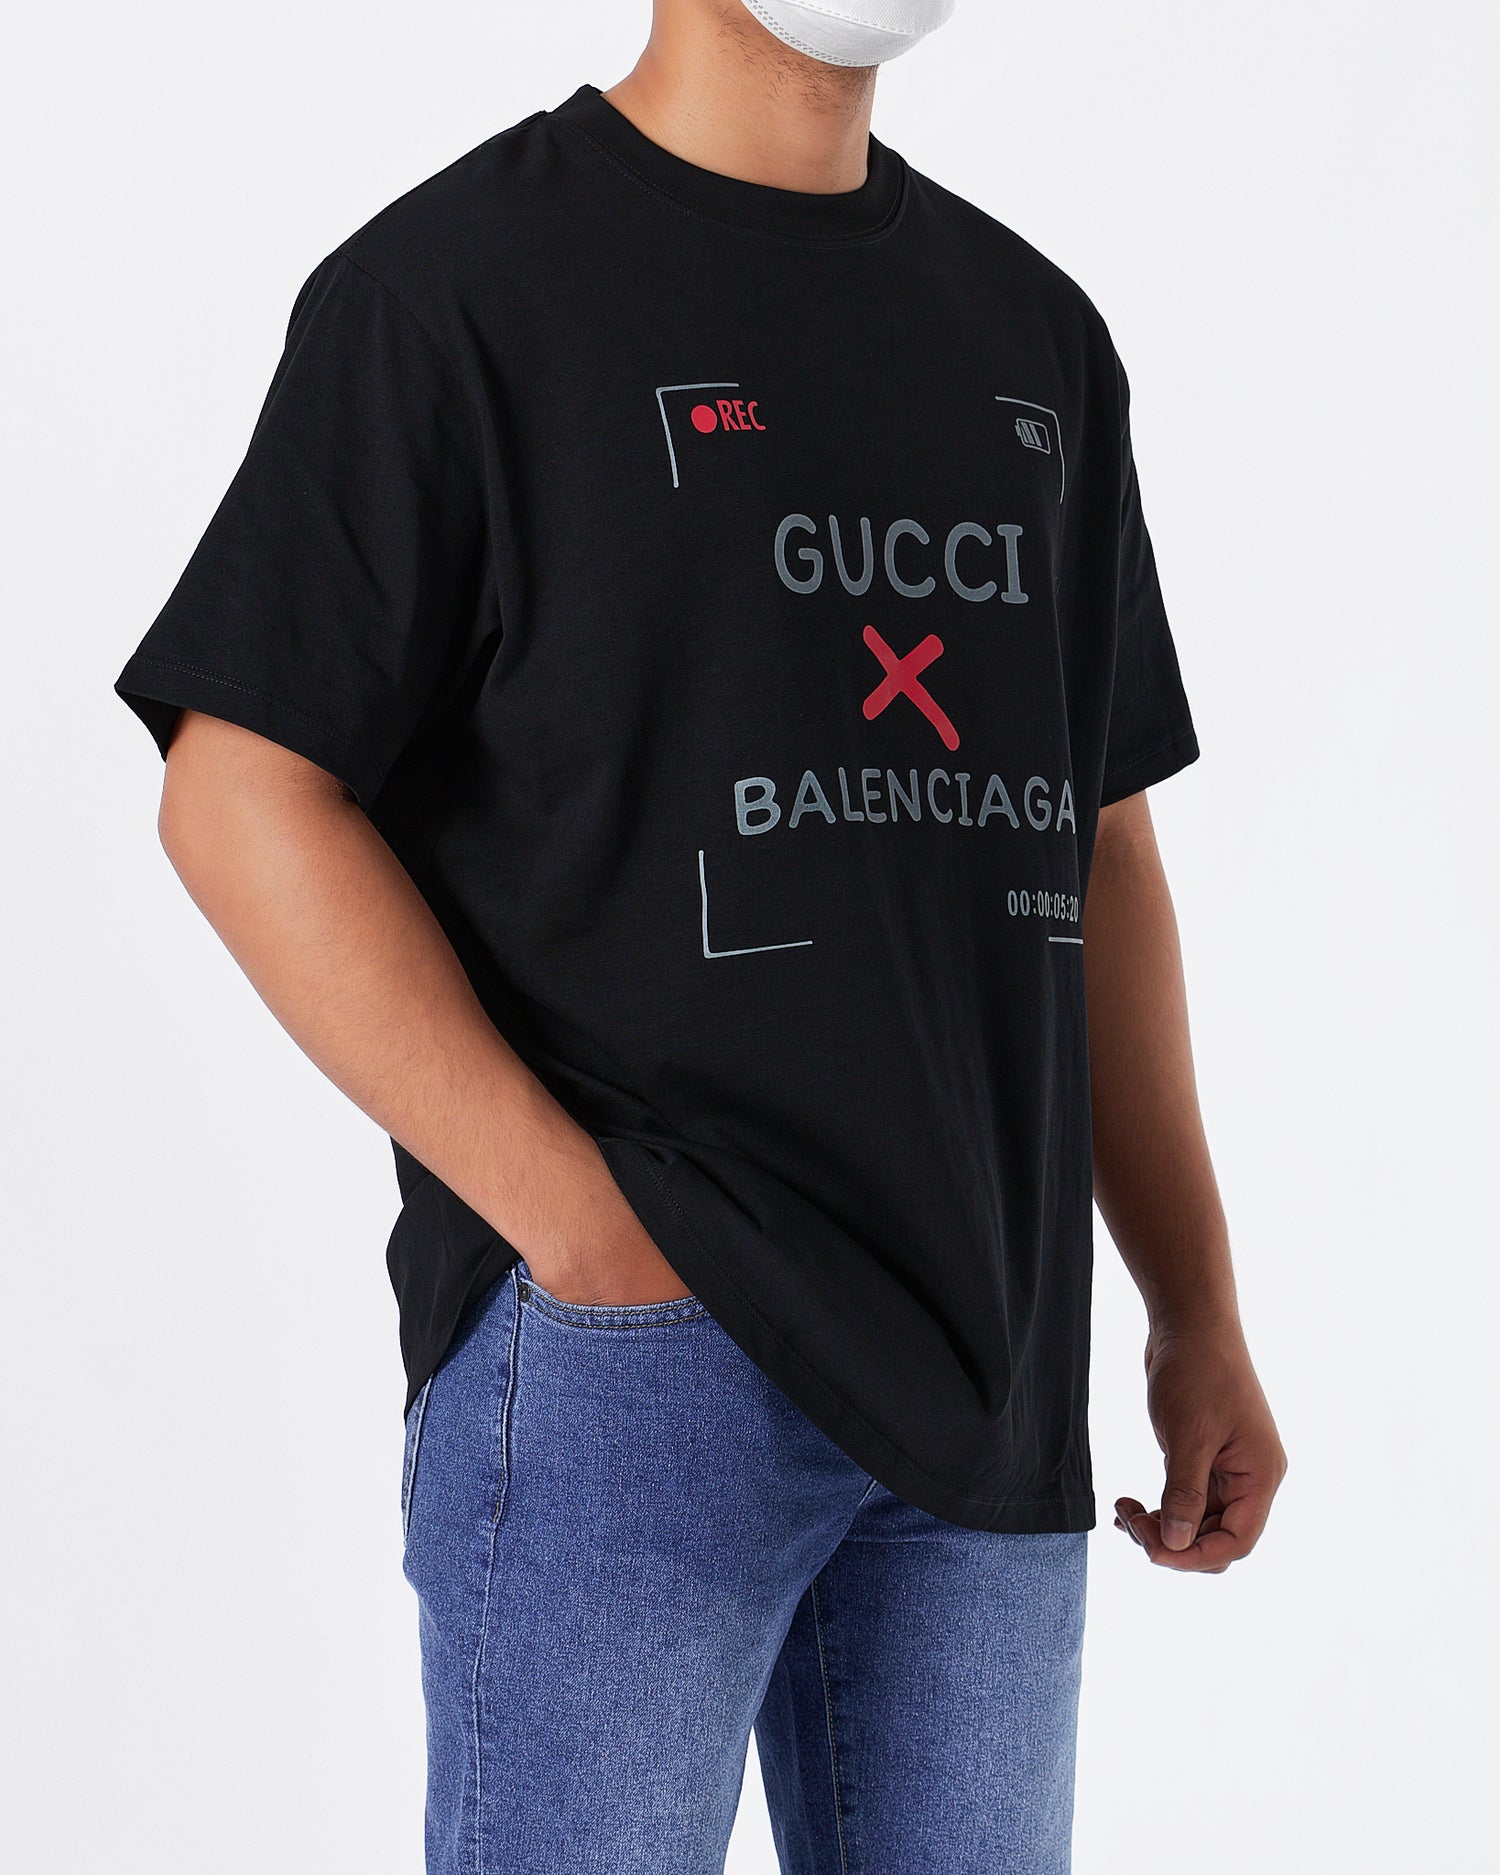 GUC x BAL Men Black T-Shirt 20.90